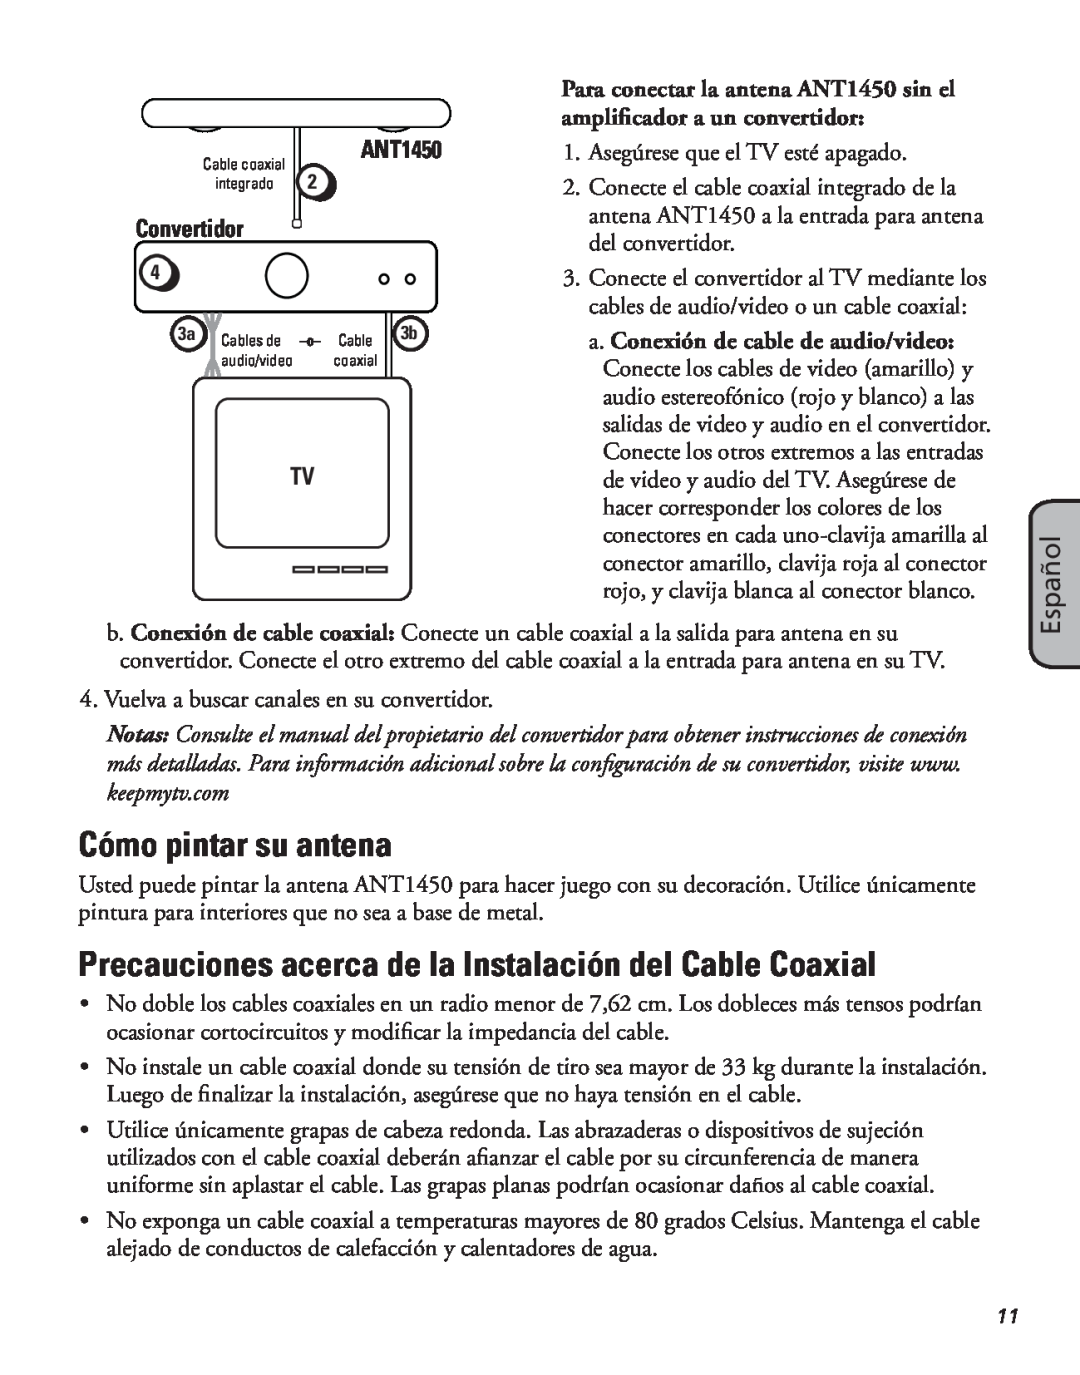 RCA ANT1450 manual Cómo pintar su antena, Precauciones acerca de la Instalación del Cable Coaxial, Español, Convertidor 